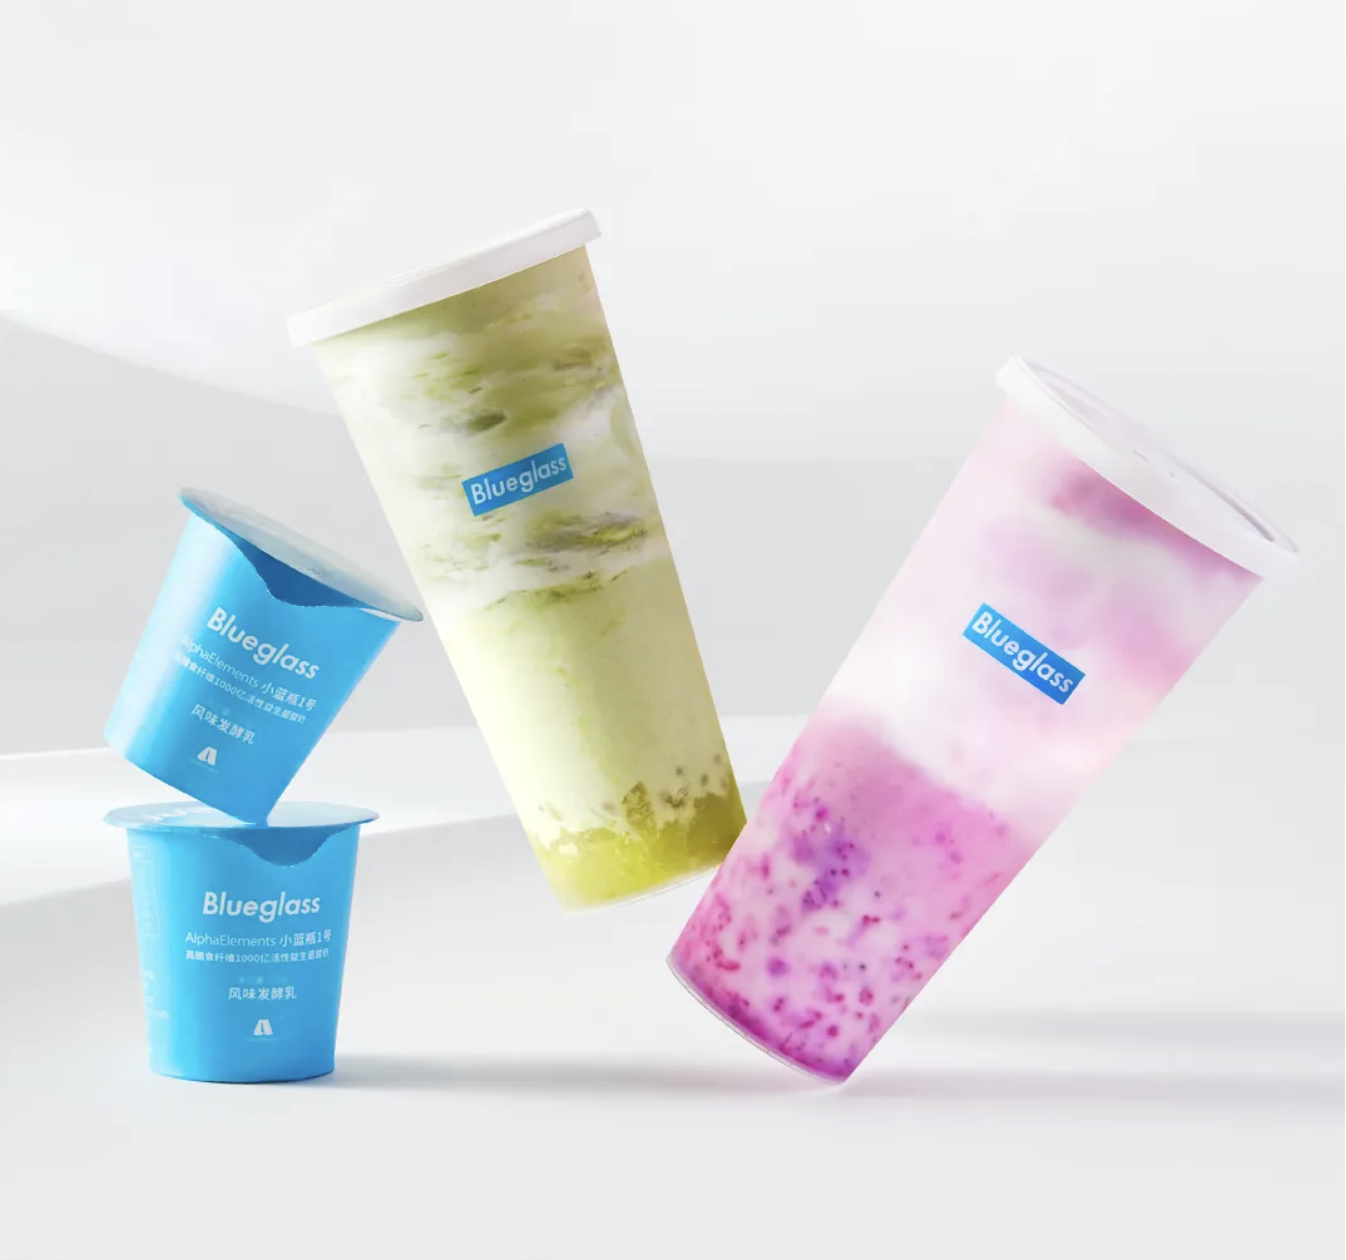 Blueglass“男友力”酸奶被指低俗，功能型产品的营销边界难划定